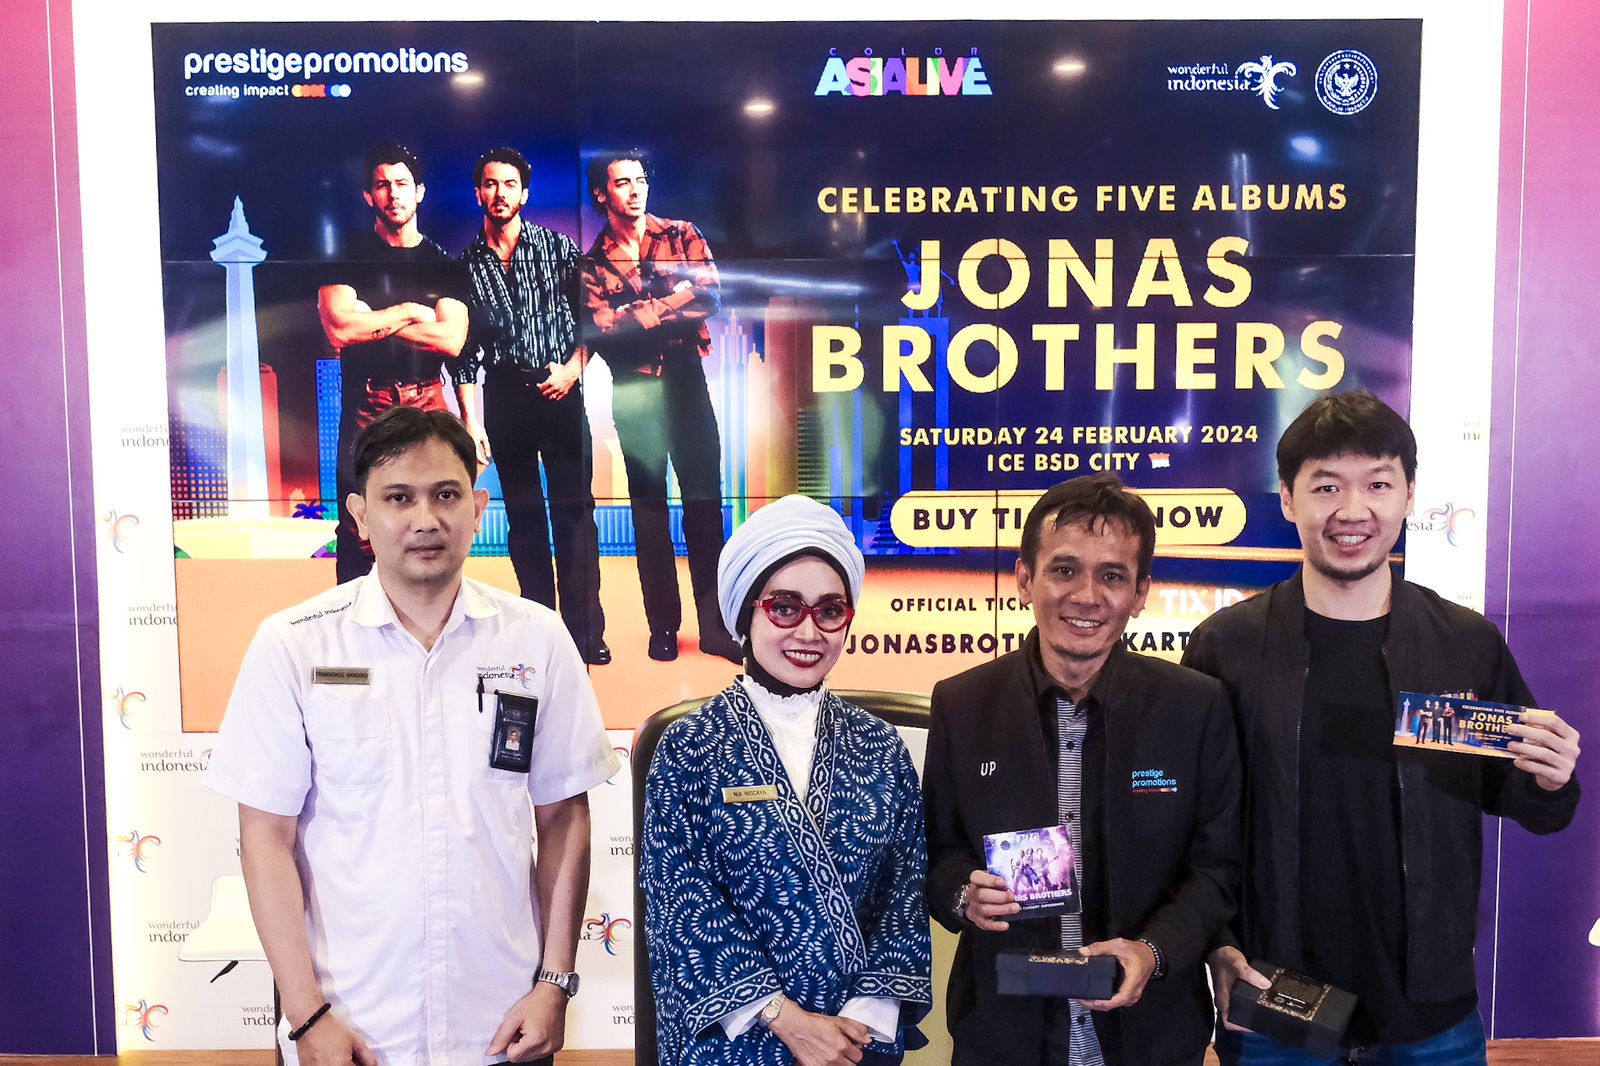 Siaran Pers: Kemenparekraf Dukung Konser "Celebrating Five Albums Jonas Brothers" Digelar di Indonesia